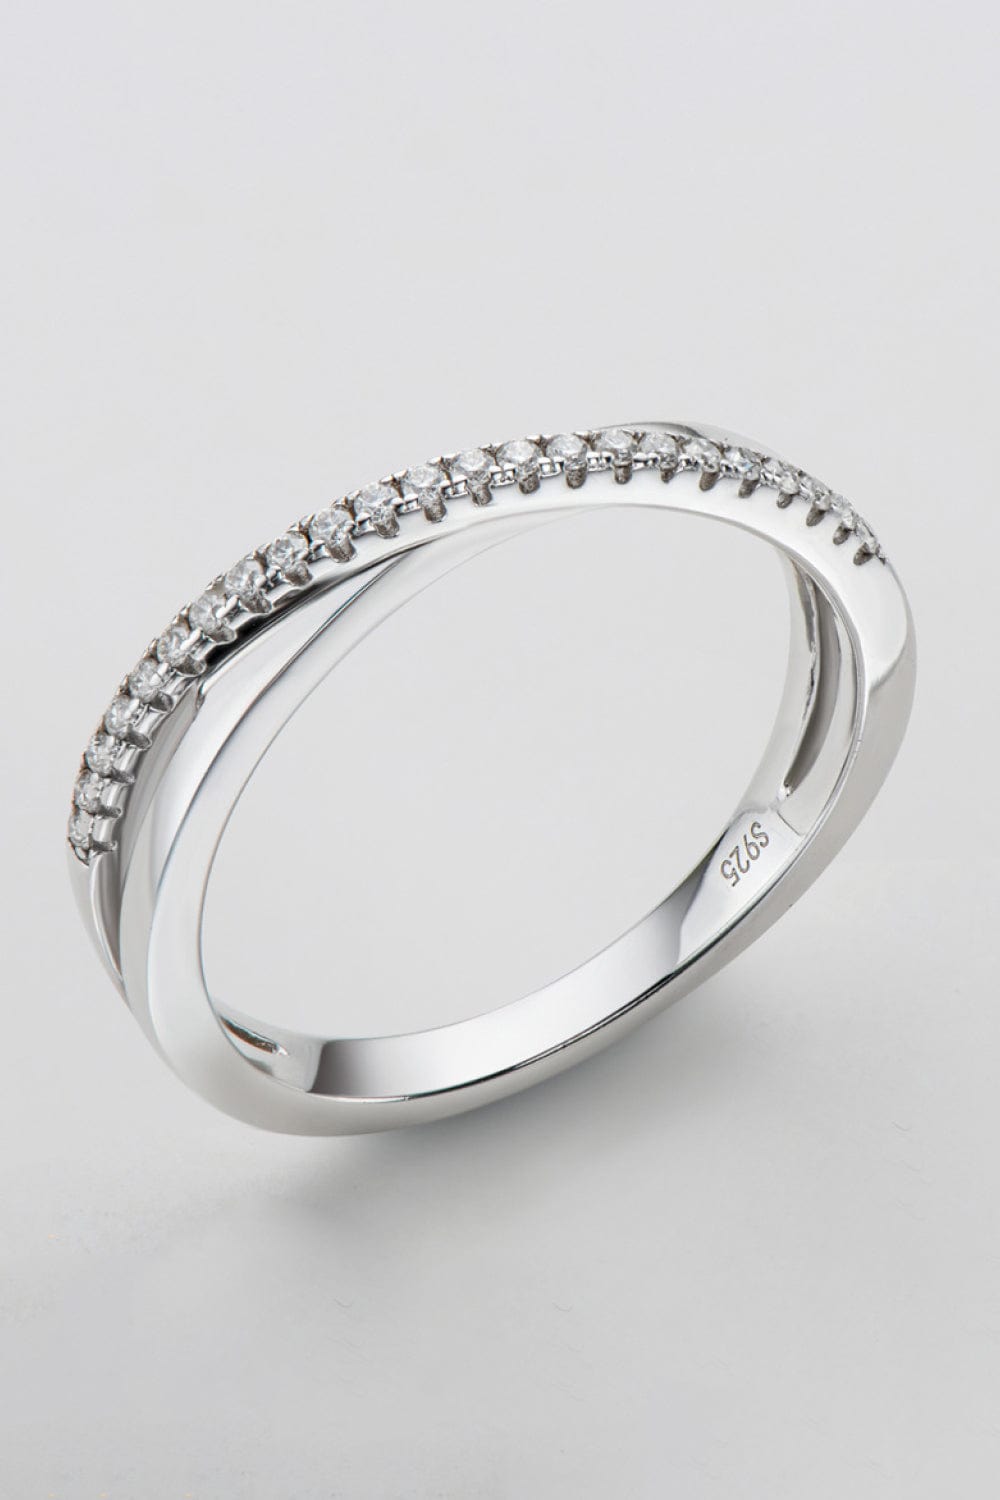 925 Sterling Silver Crisscross Moissanite Ring - Body By J'ne